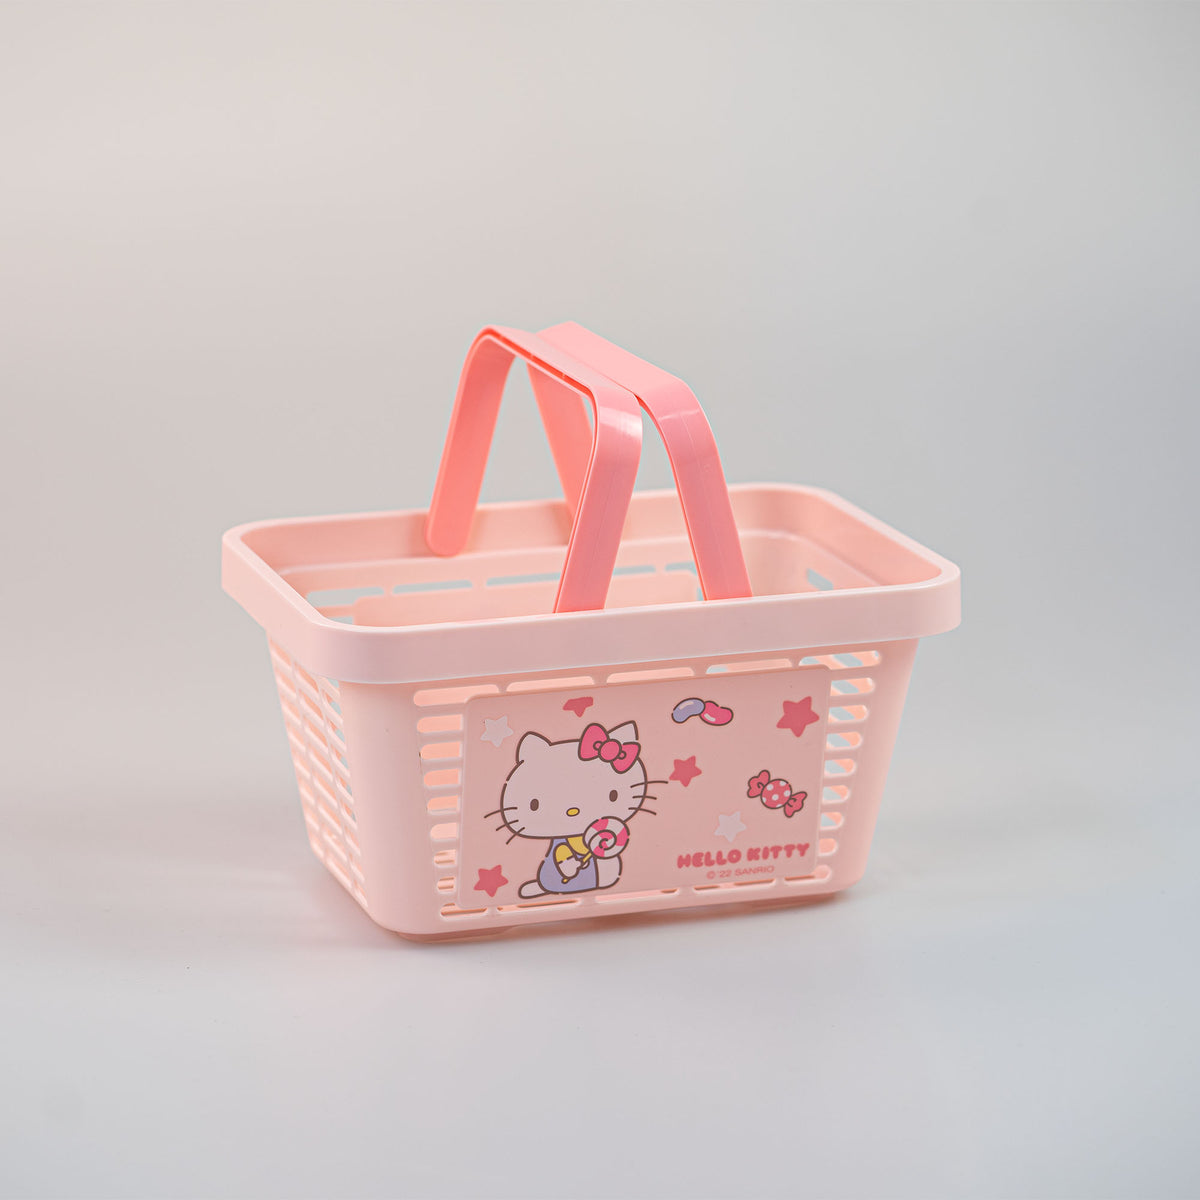 Cestino hello kitty sanrio rosa con personaggio storage box organizer